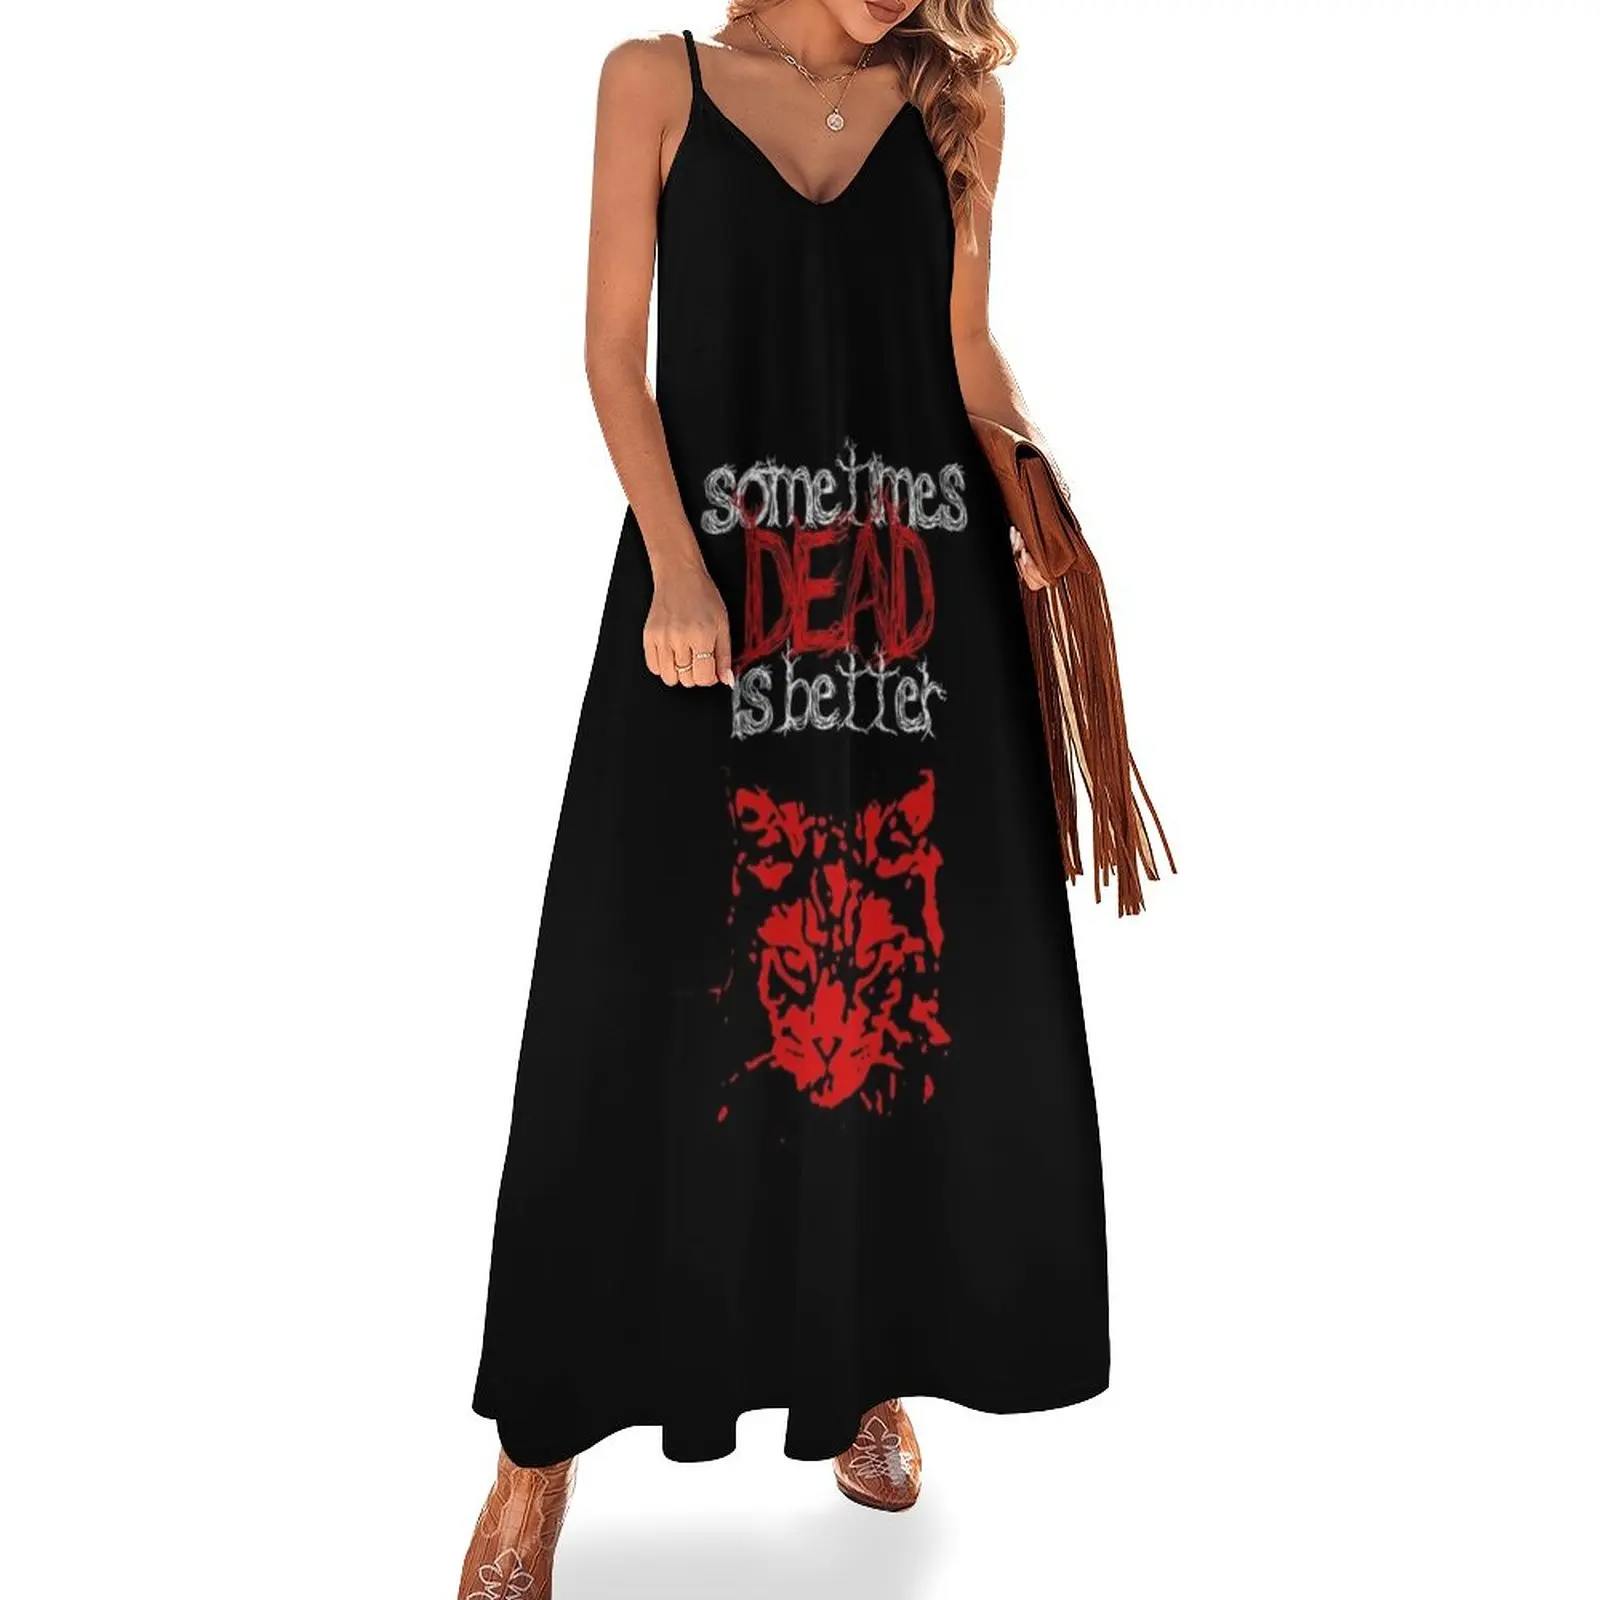 

Sometimes dead is better - Pet Sematary Sleeveless Dress Long dress Women dresses summer